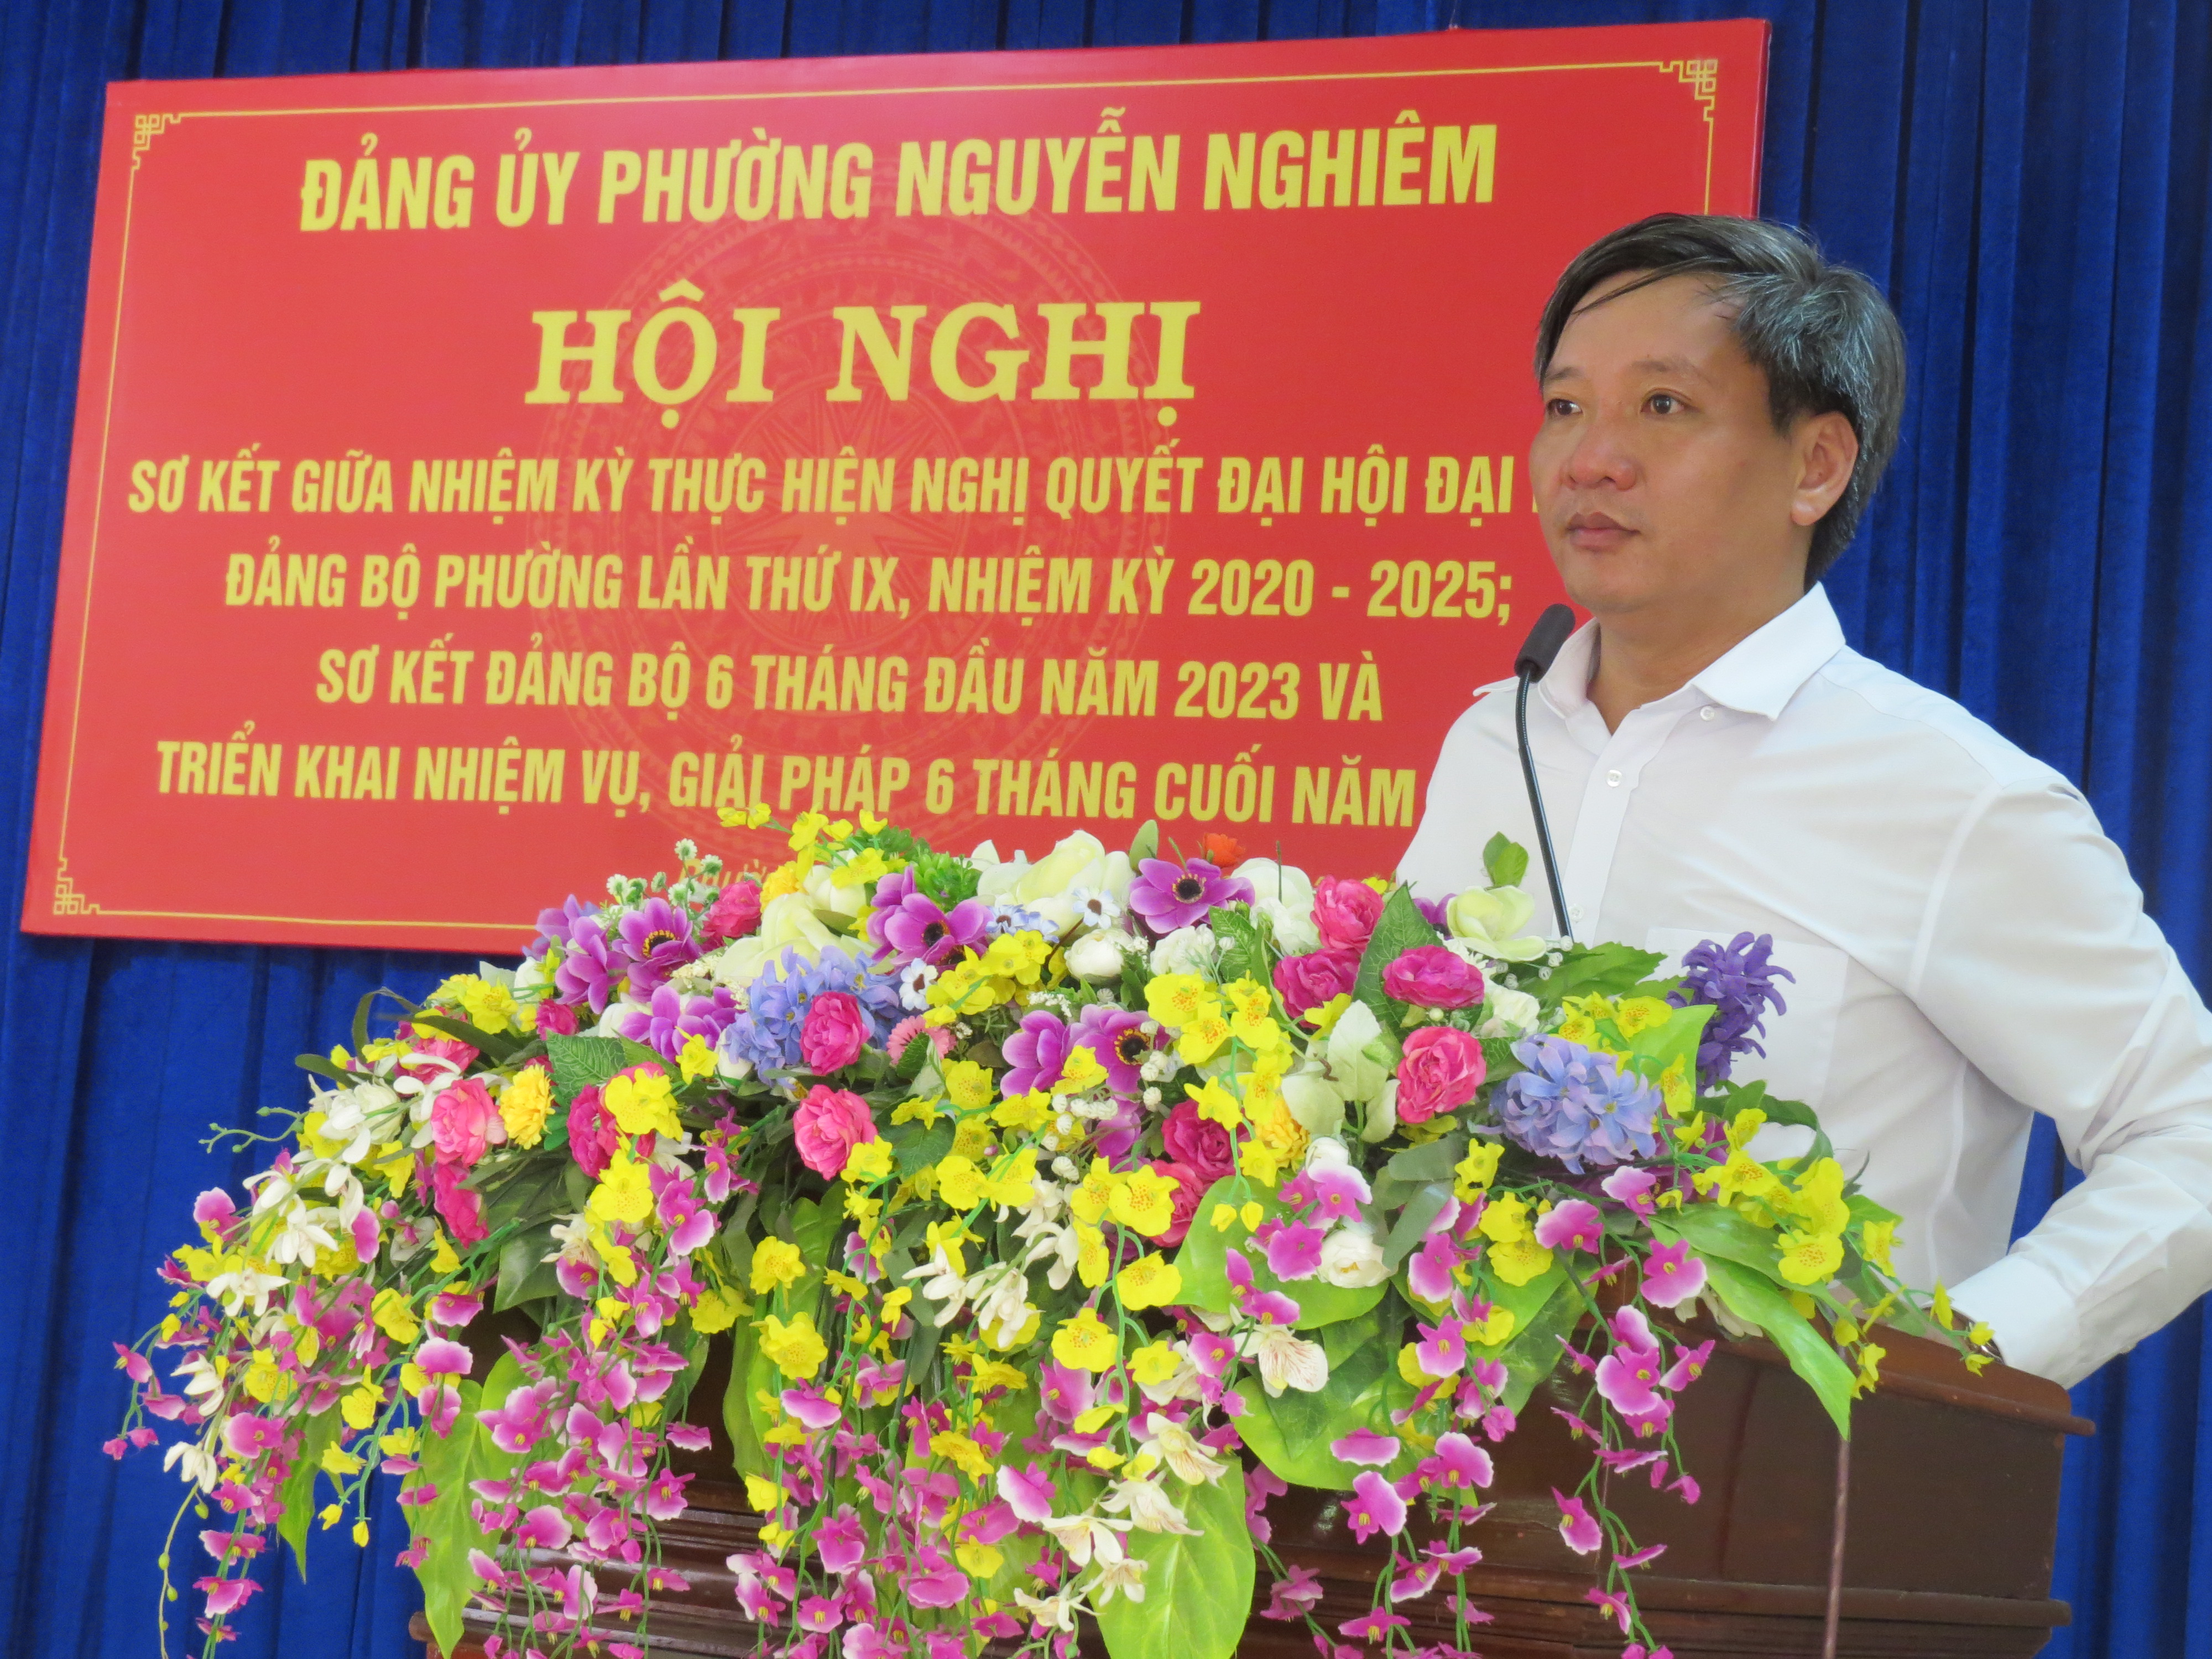 Đảng bộ phường Nguyễn Nghiêm tổ chức hội nghị sơ kết giữa nhiệm kỳ